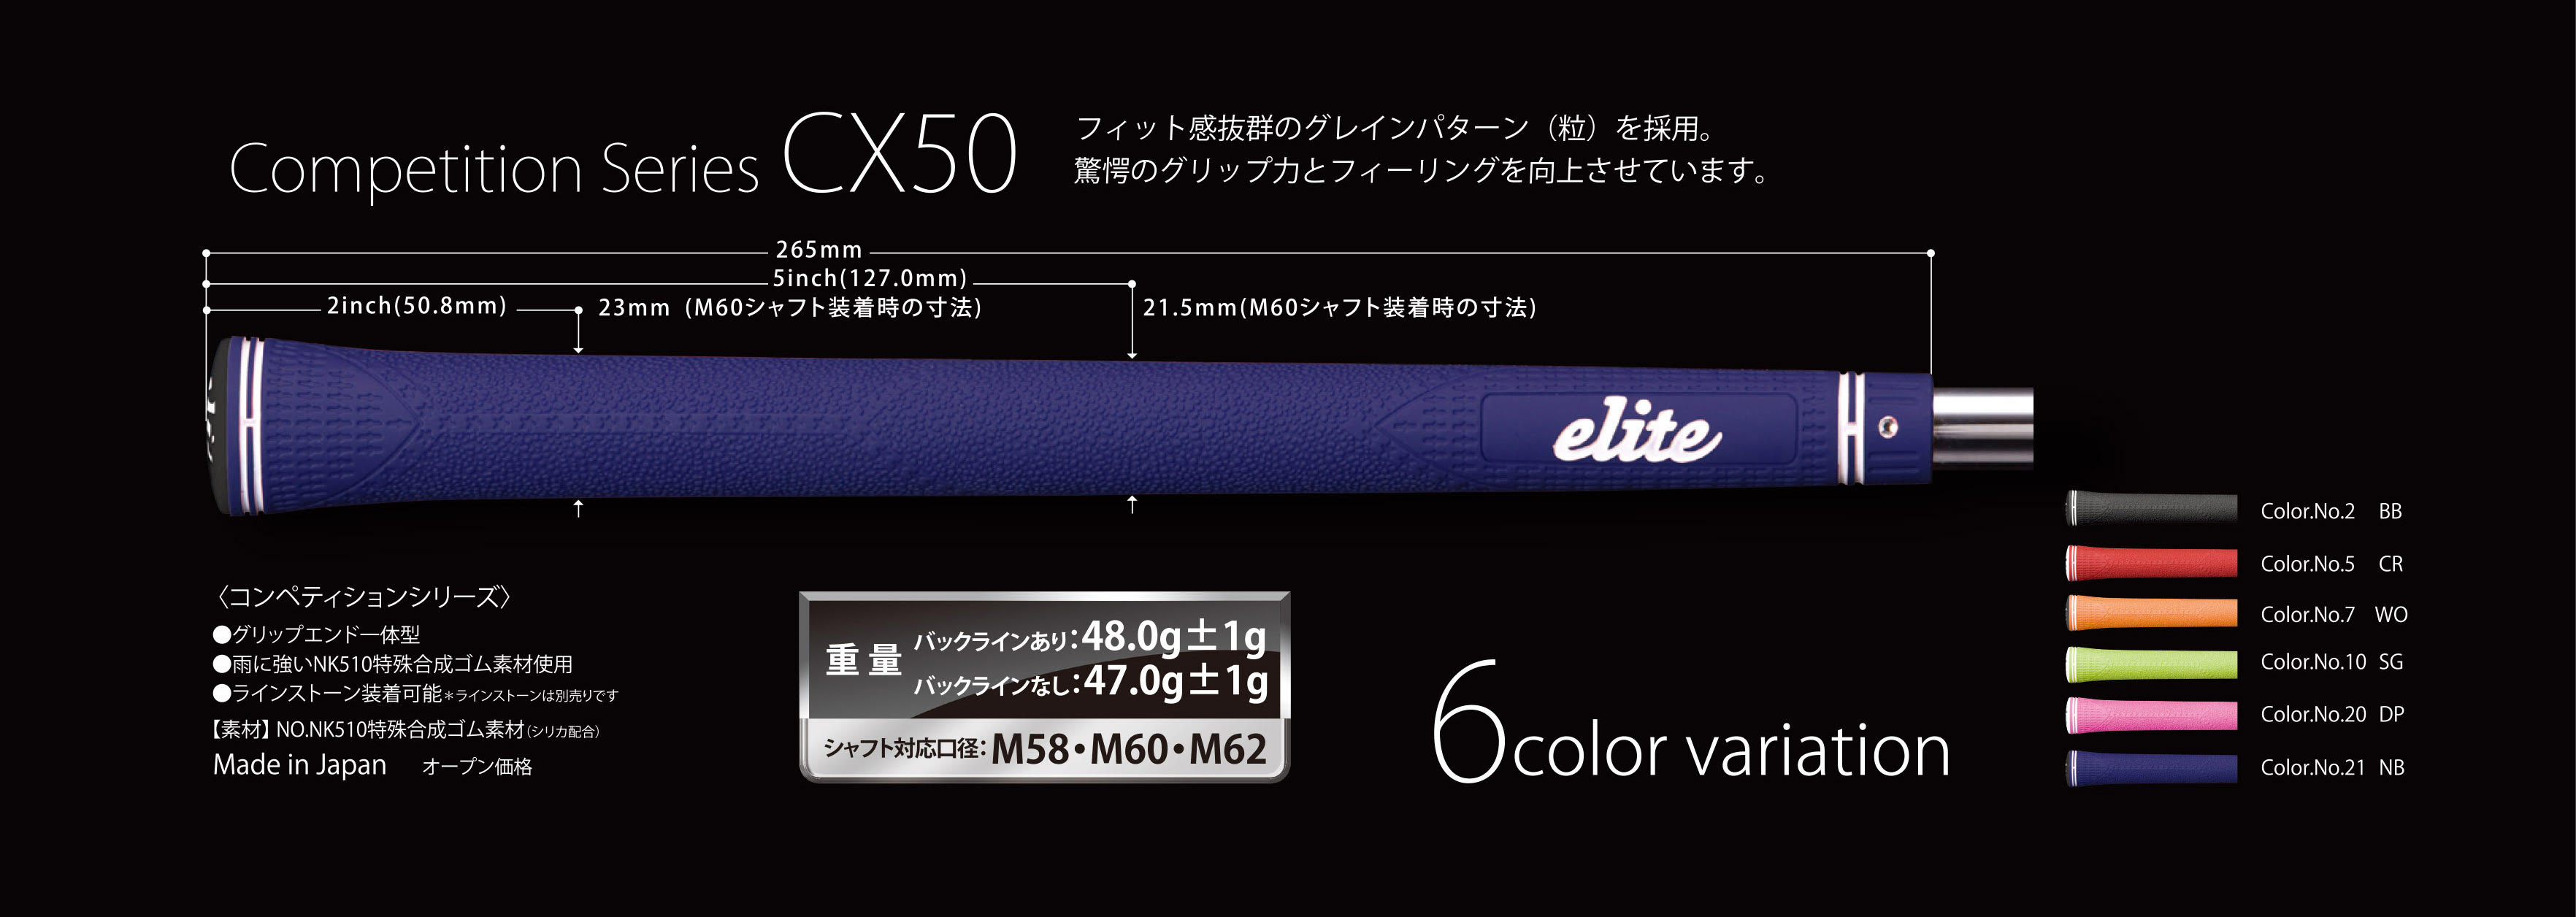 349円 【75%OFF!】 elitegrips エリートグリップ ゴルフグリップ コンペティションシリーズ CX50 シルバーホワイト バックラインなし